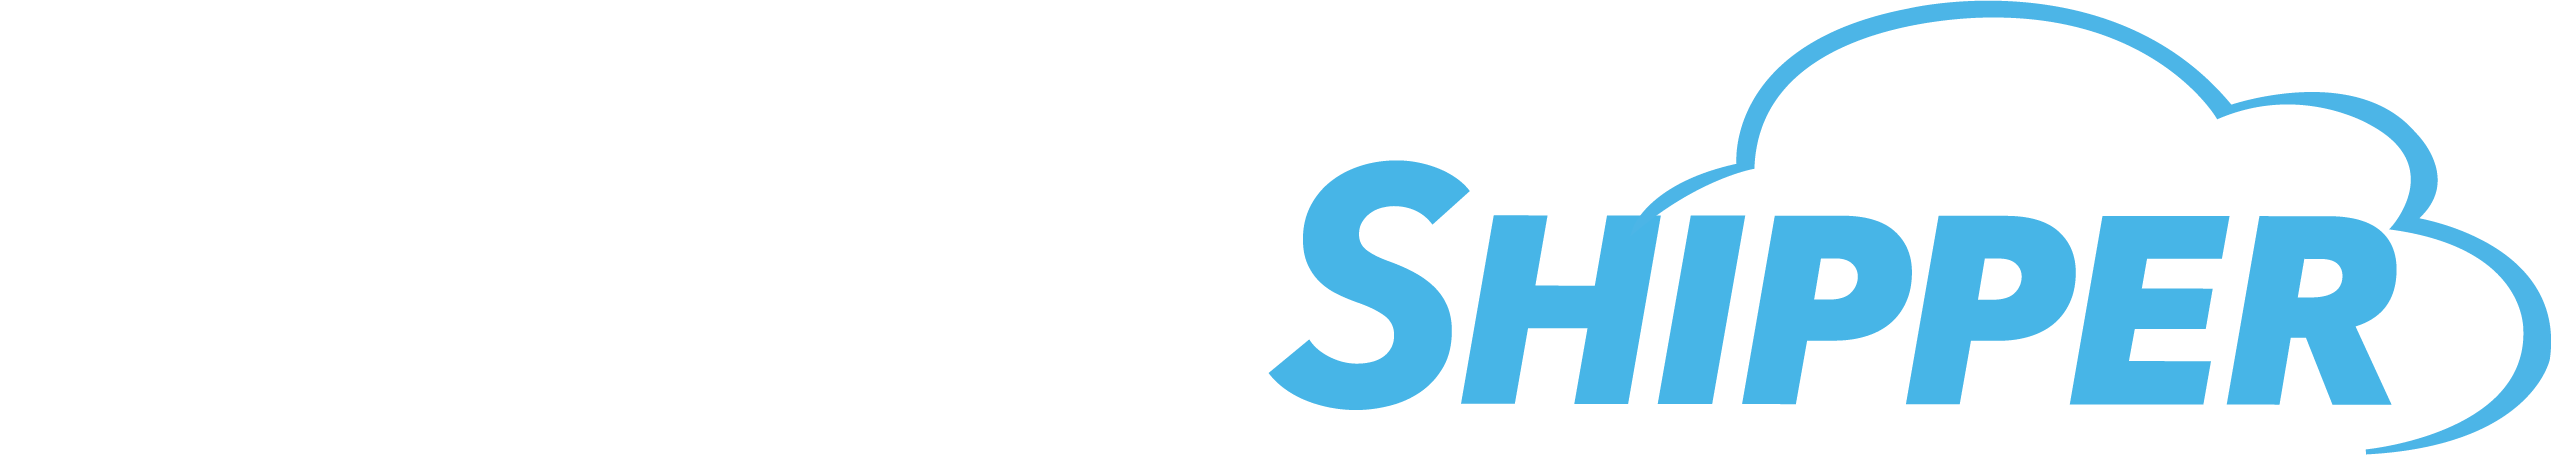 DesktopShipper™